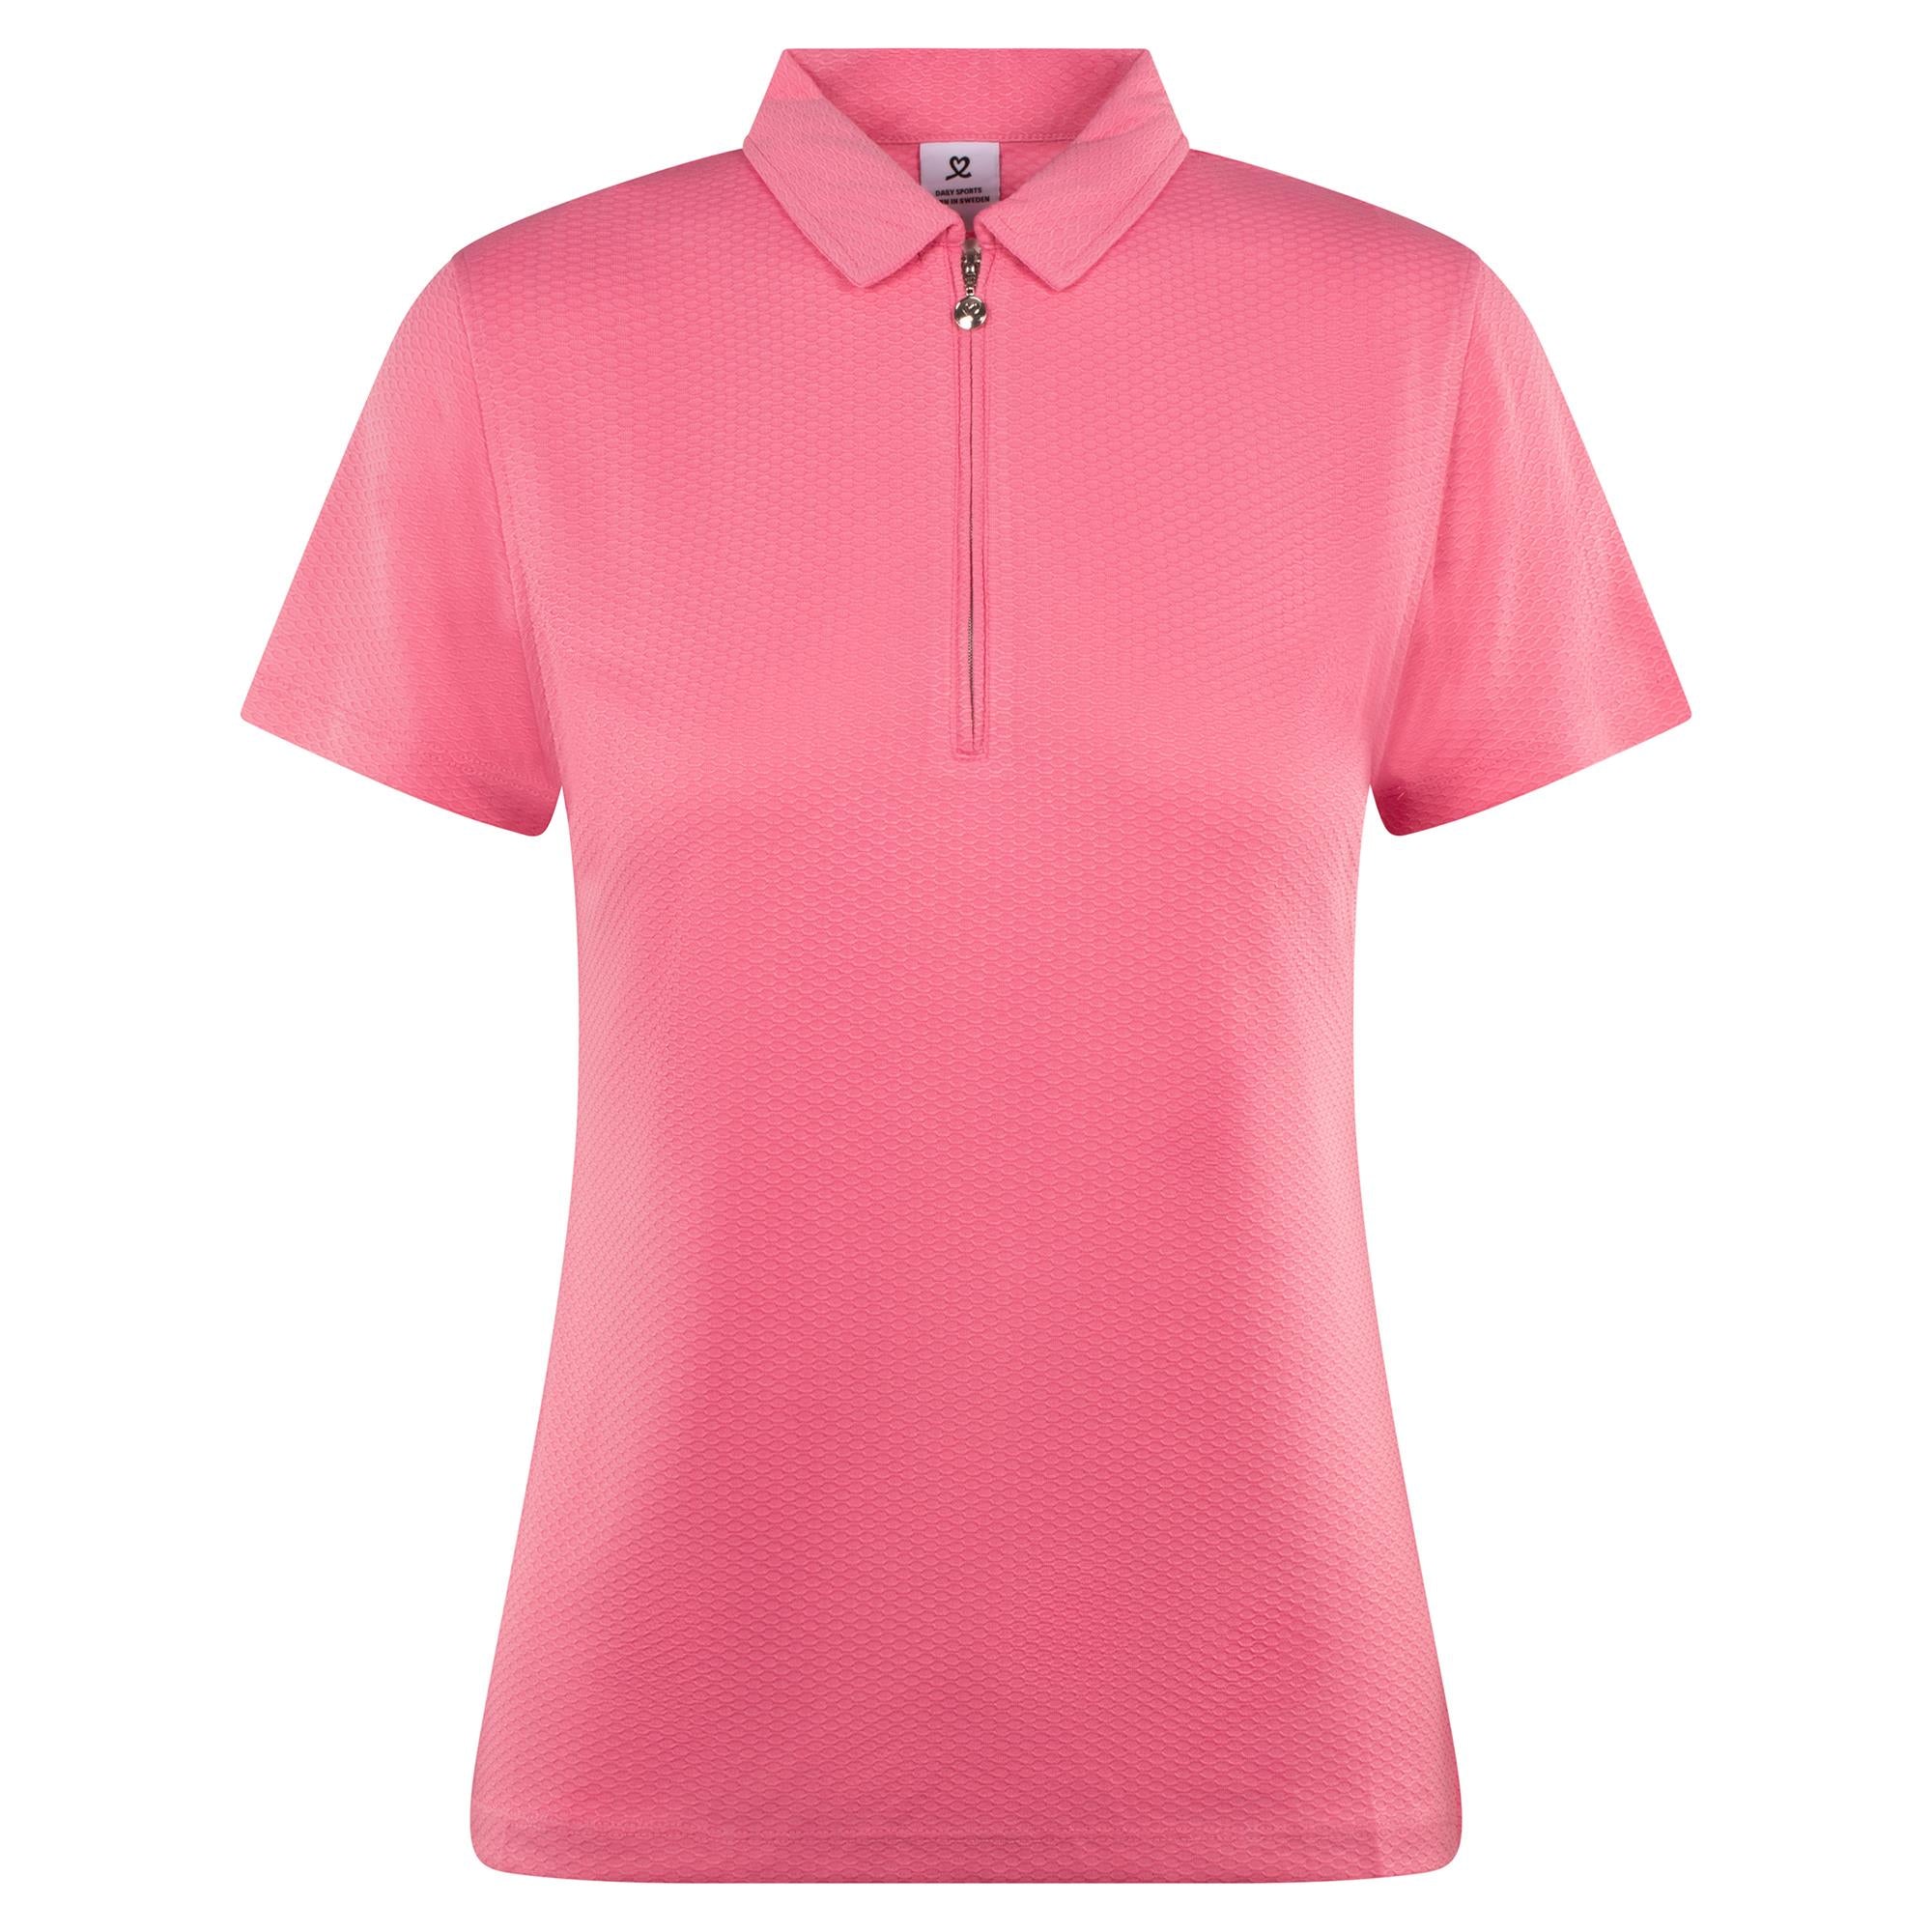 Pink Shirt Dress for Women Dressy Polo Shirt Business Summer